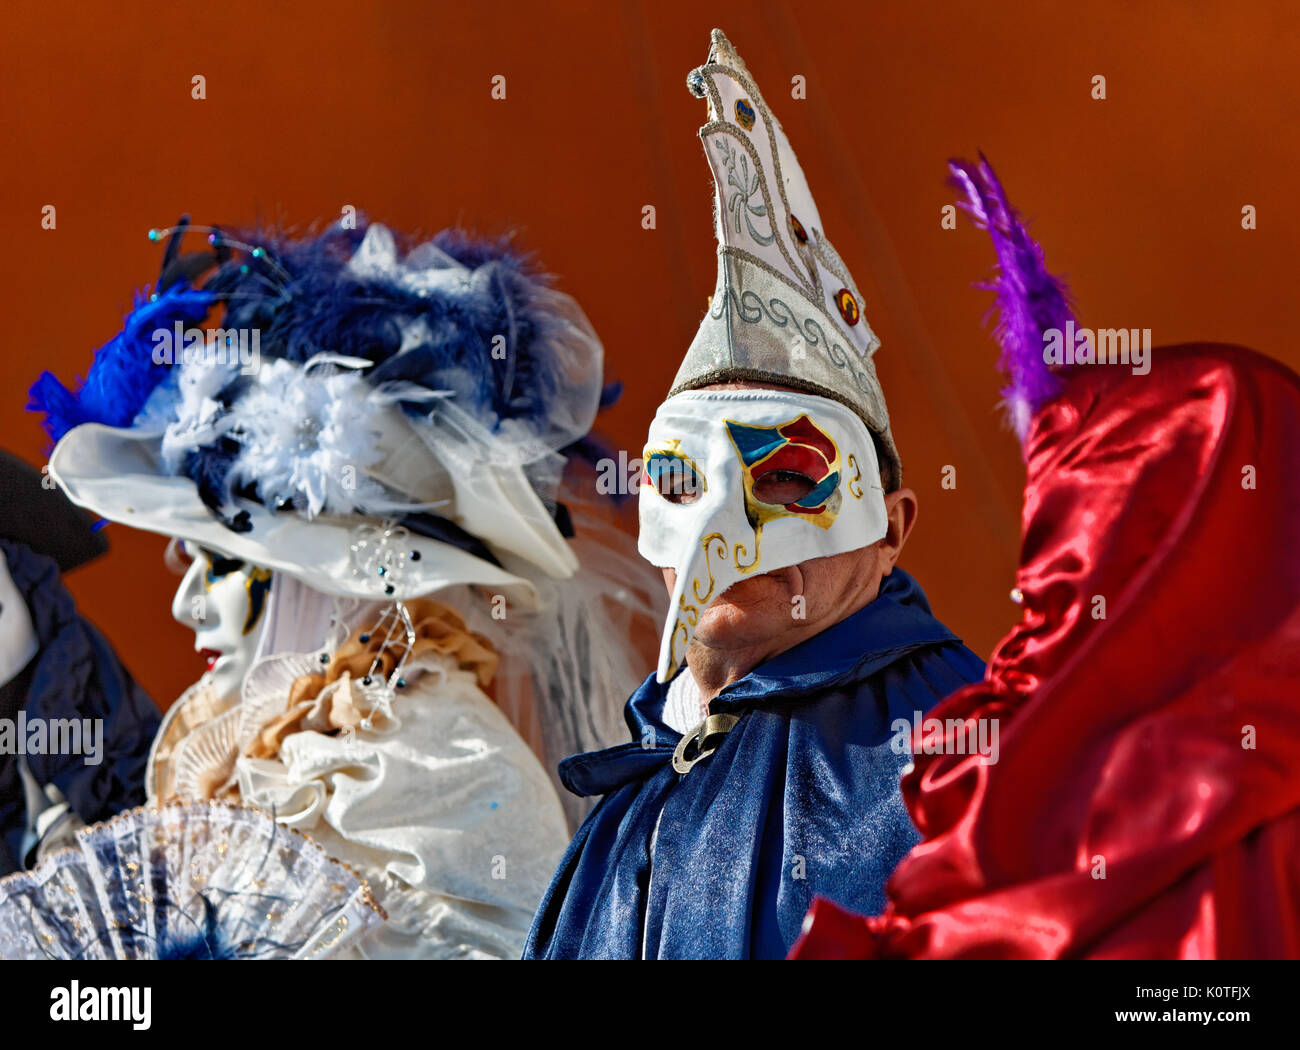 Venedig, Italien, 26. Februar 2011: Drei Leute im Venezianischen verkleidet Während der Karneval von Venedig. Selektiver Fokus auf die lange Nase Masken in der Mitte. Stockfoto